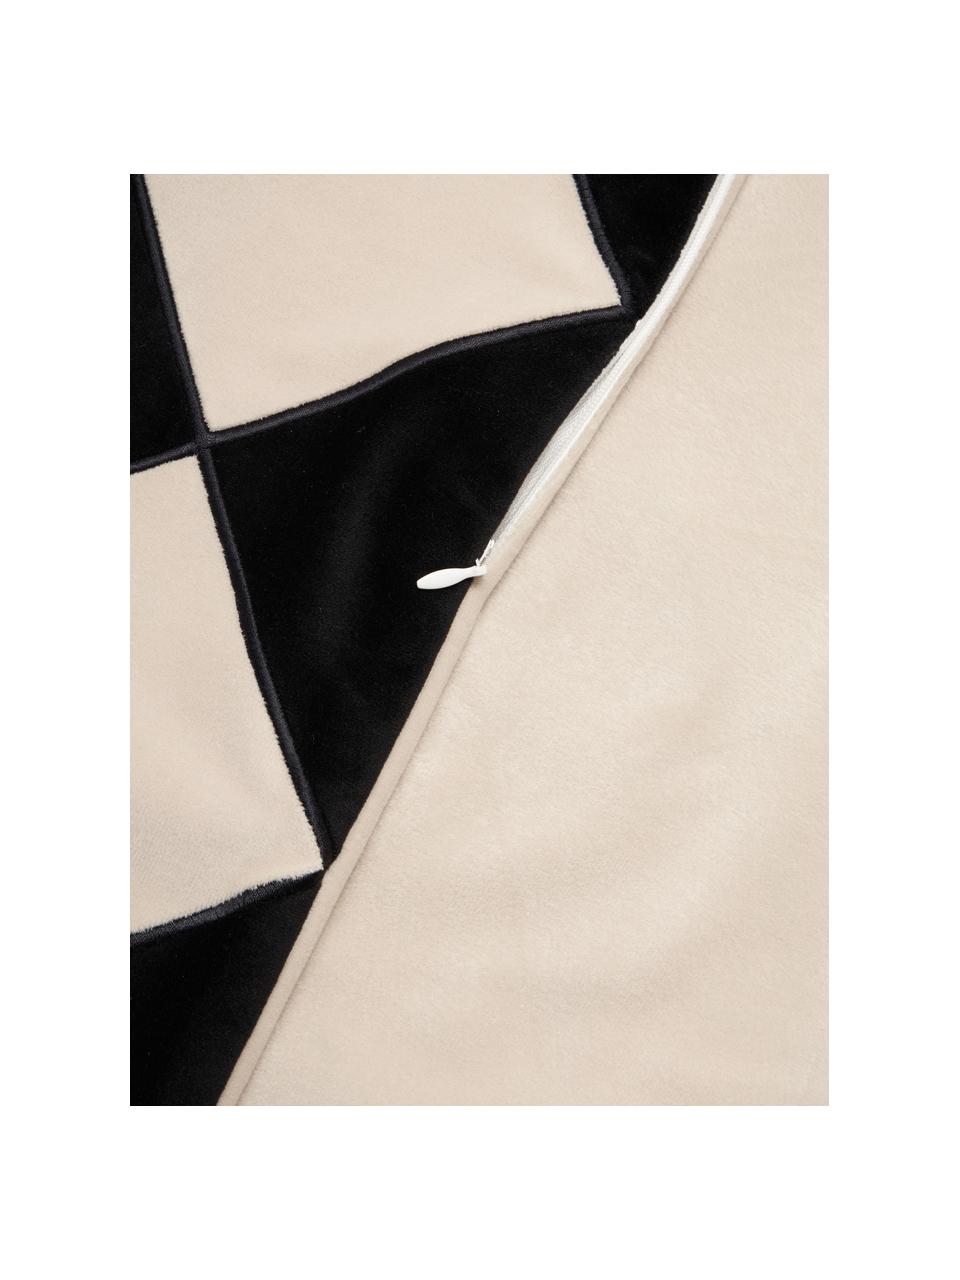 Federa arredo in velluto nero/bianco crema Jaxon, 100% velluto di poliestere, Nero, beige, Larg. 45 x Lung. 45 cm